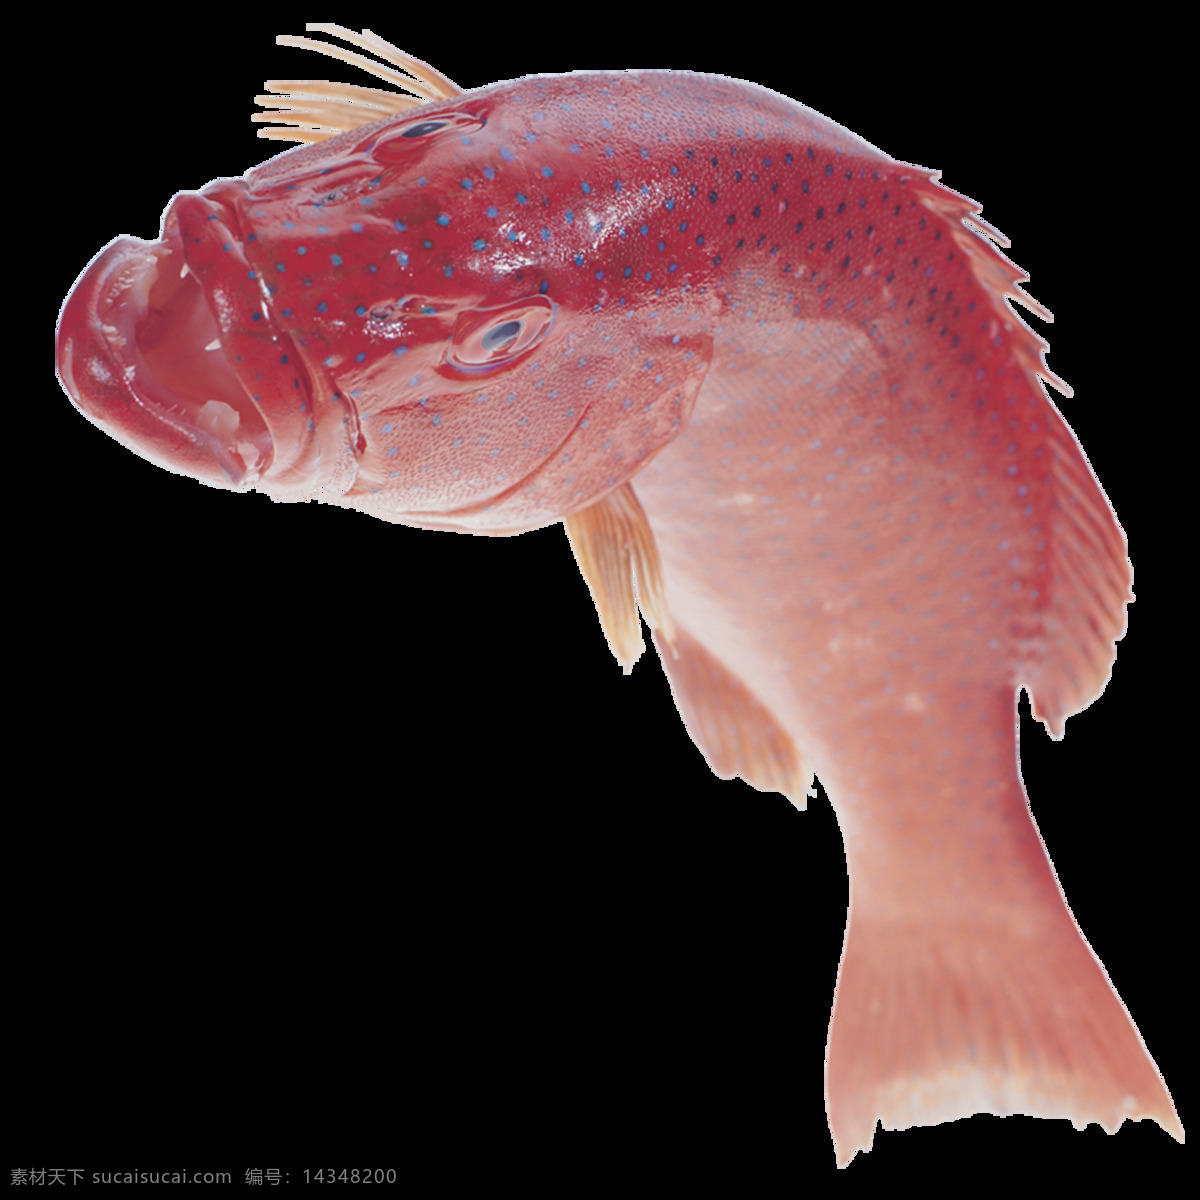 高清 唯美 鱼儿 绘画 红色鲤鱼 形象 生动 逼真